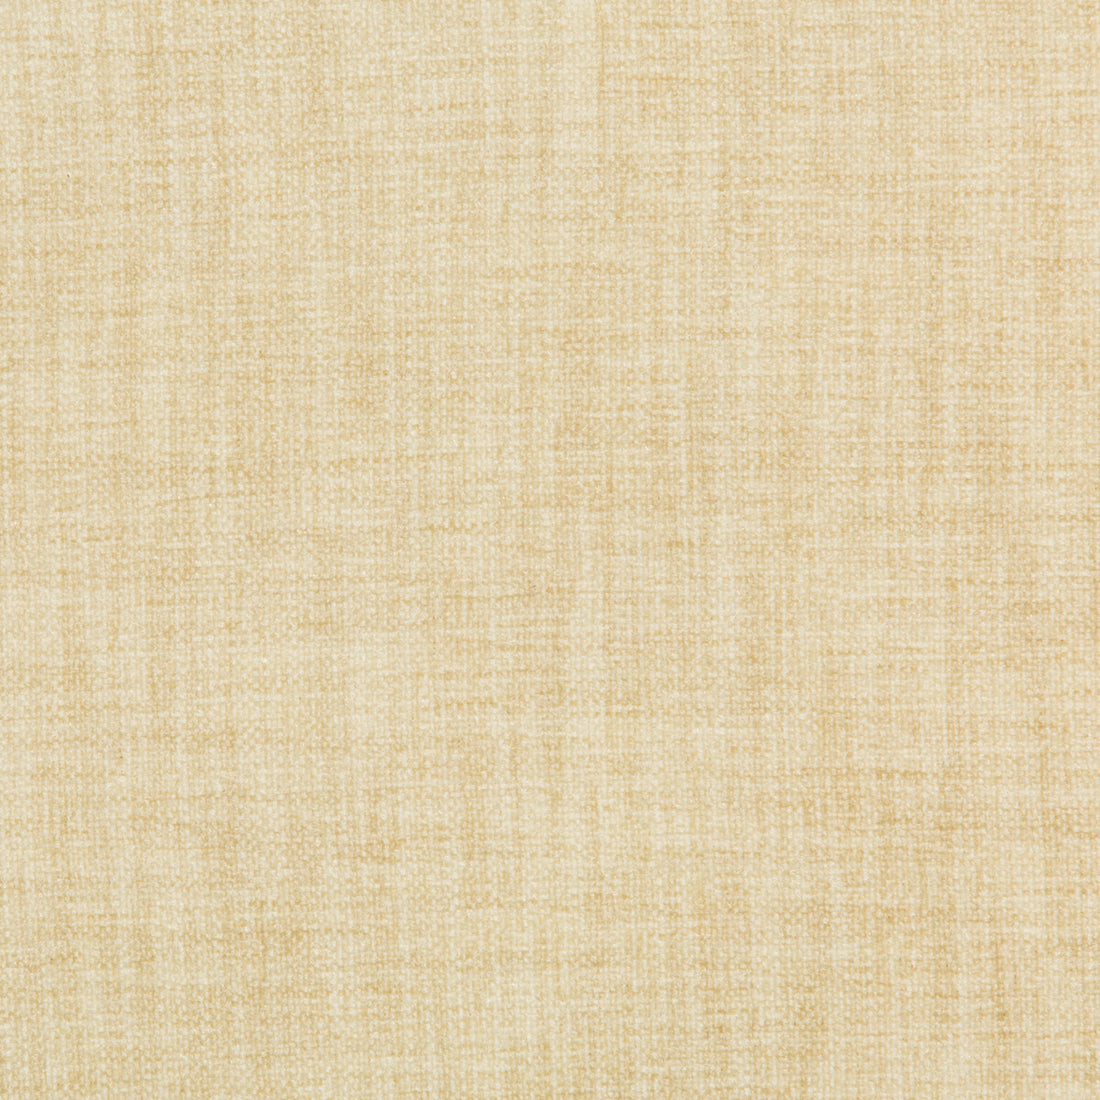 Kravet Basics fabric in 35775-1 color - pattern 35775.1.0 - by Kravet Basics